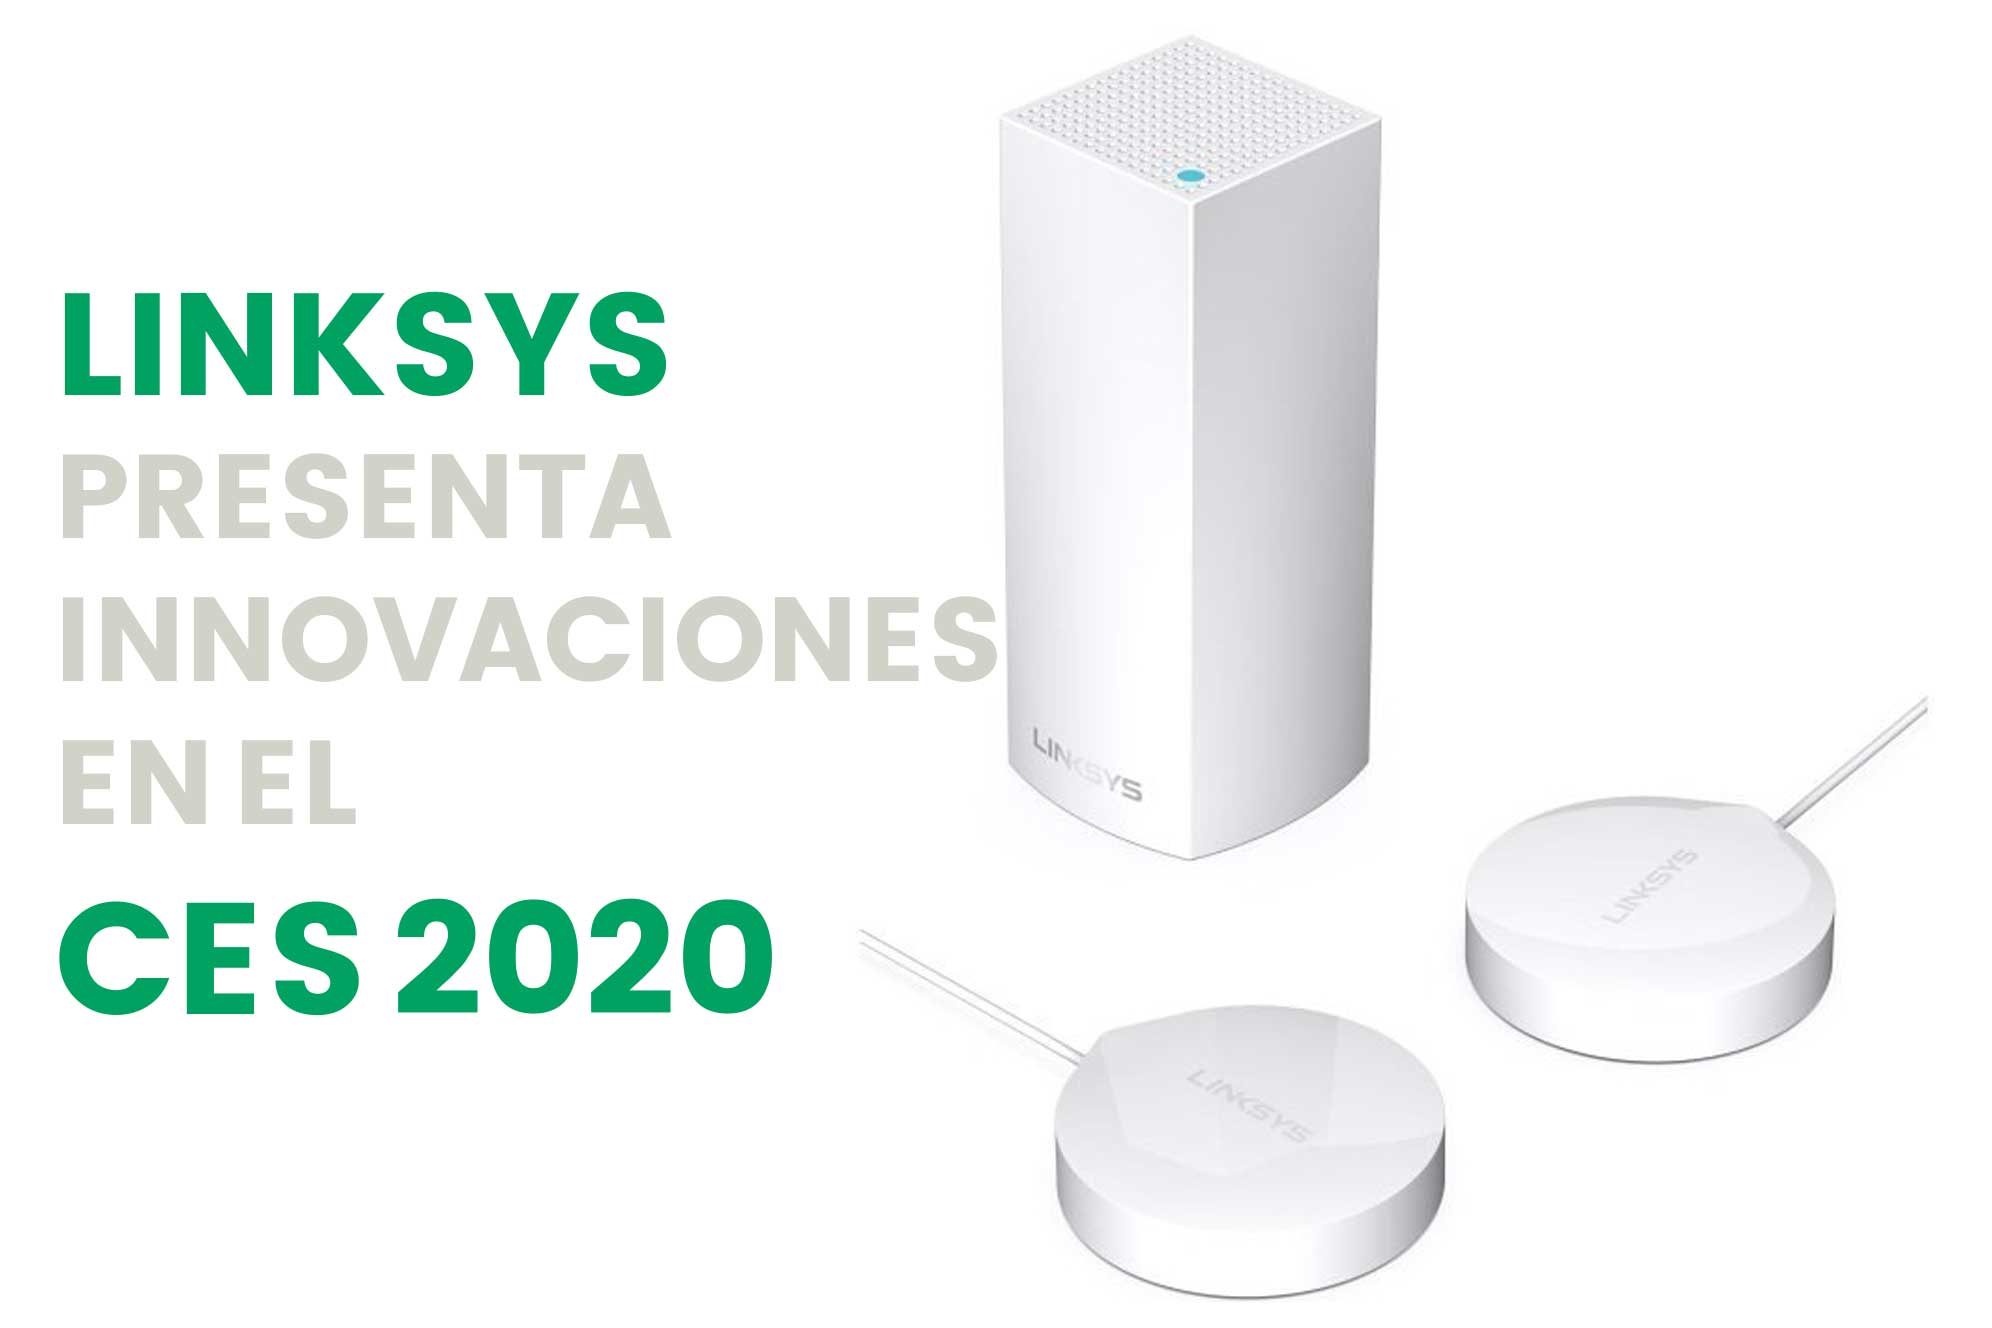 Conoce todos los productos que presentó Linksys en el CES 2020